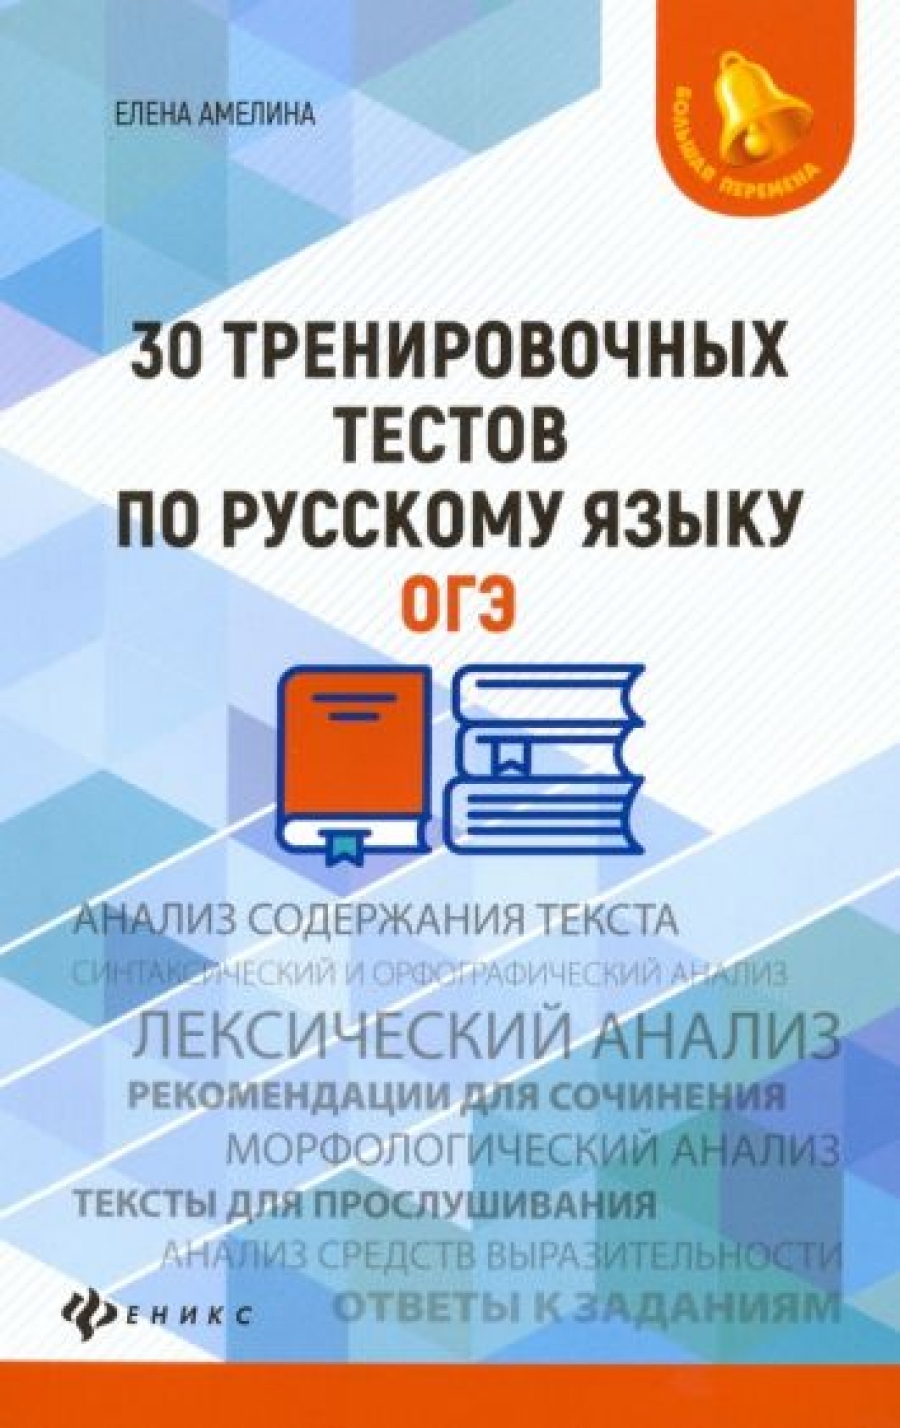 Амелина Е.В. 30 тренировочных тестов по русскому языку. ОГЭ 